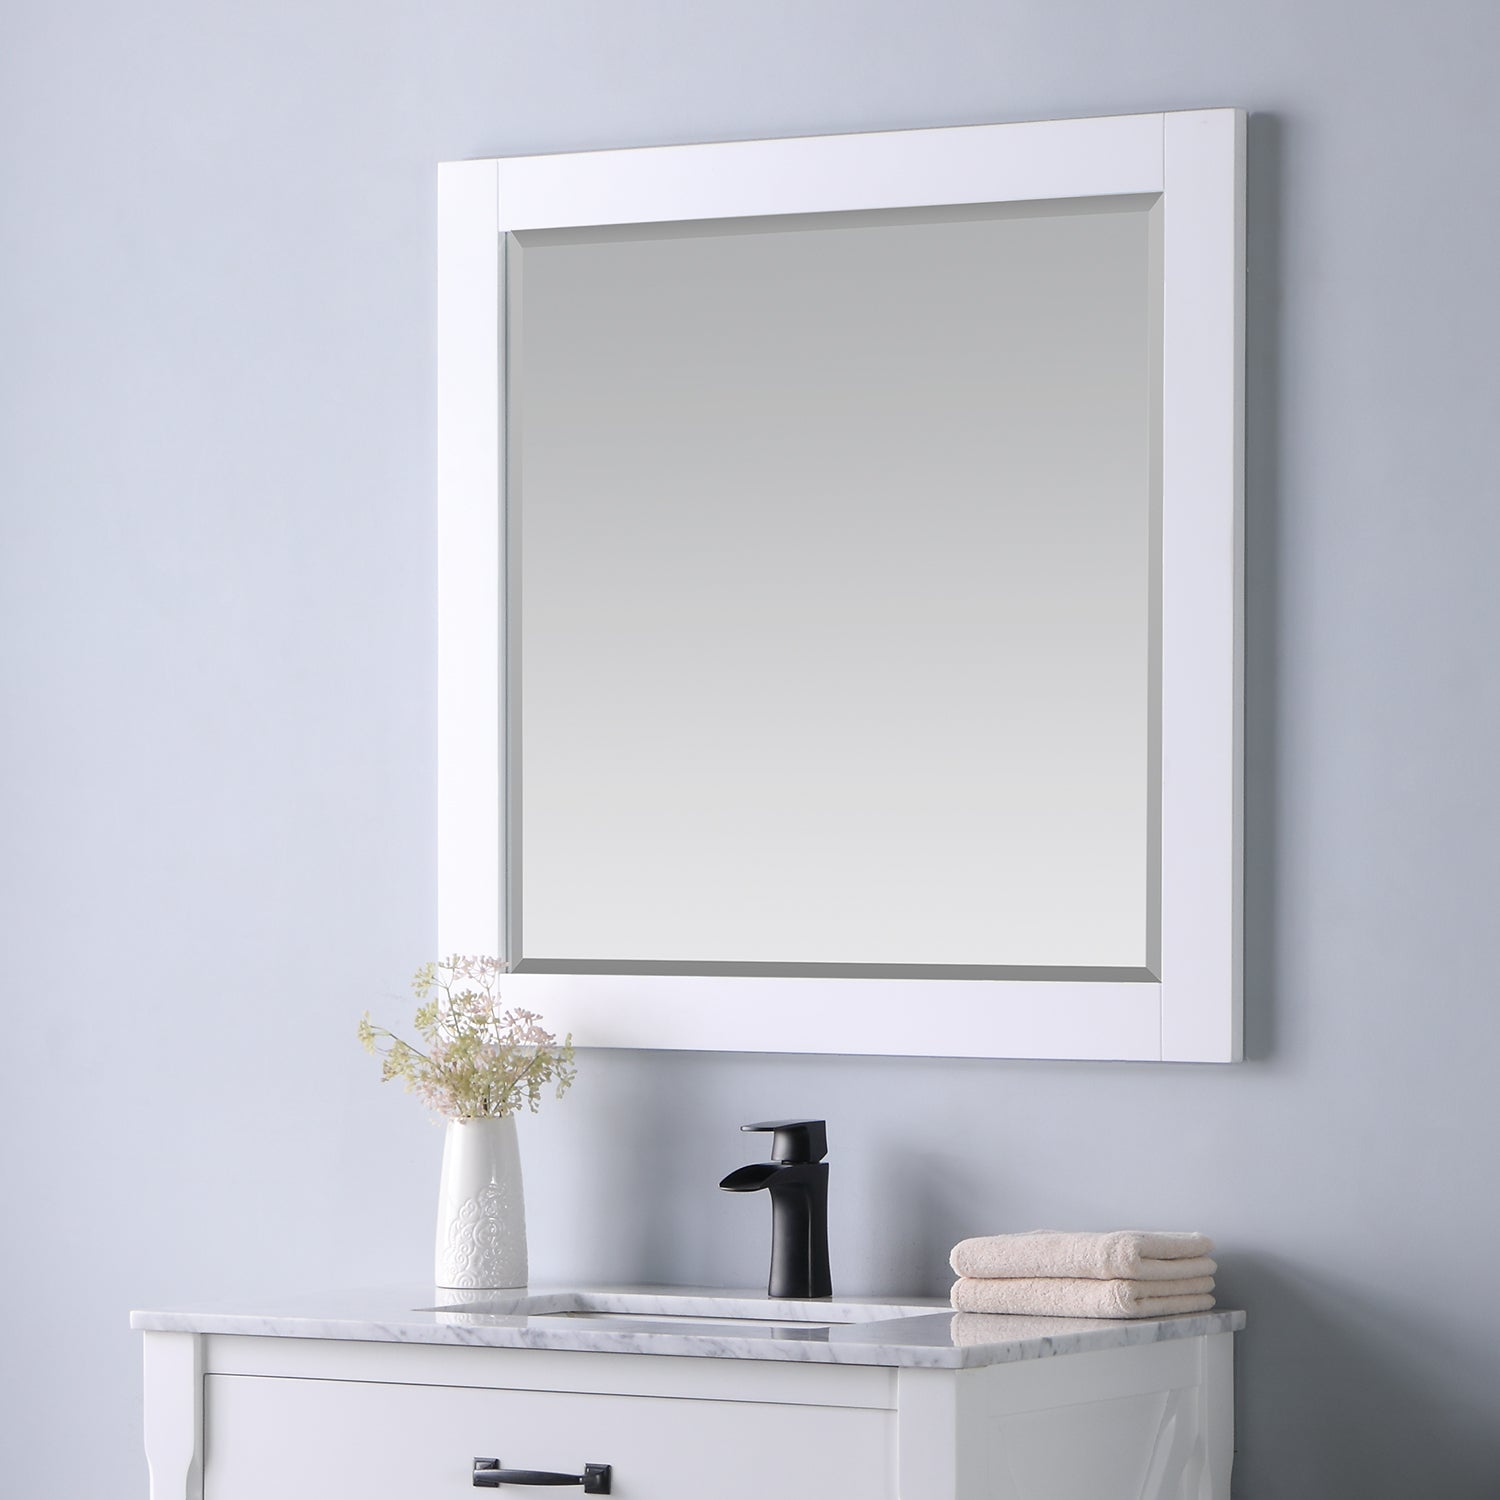 Maribella 34" Rectangular Bathroom Wood Framed Wall Mirror